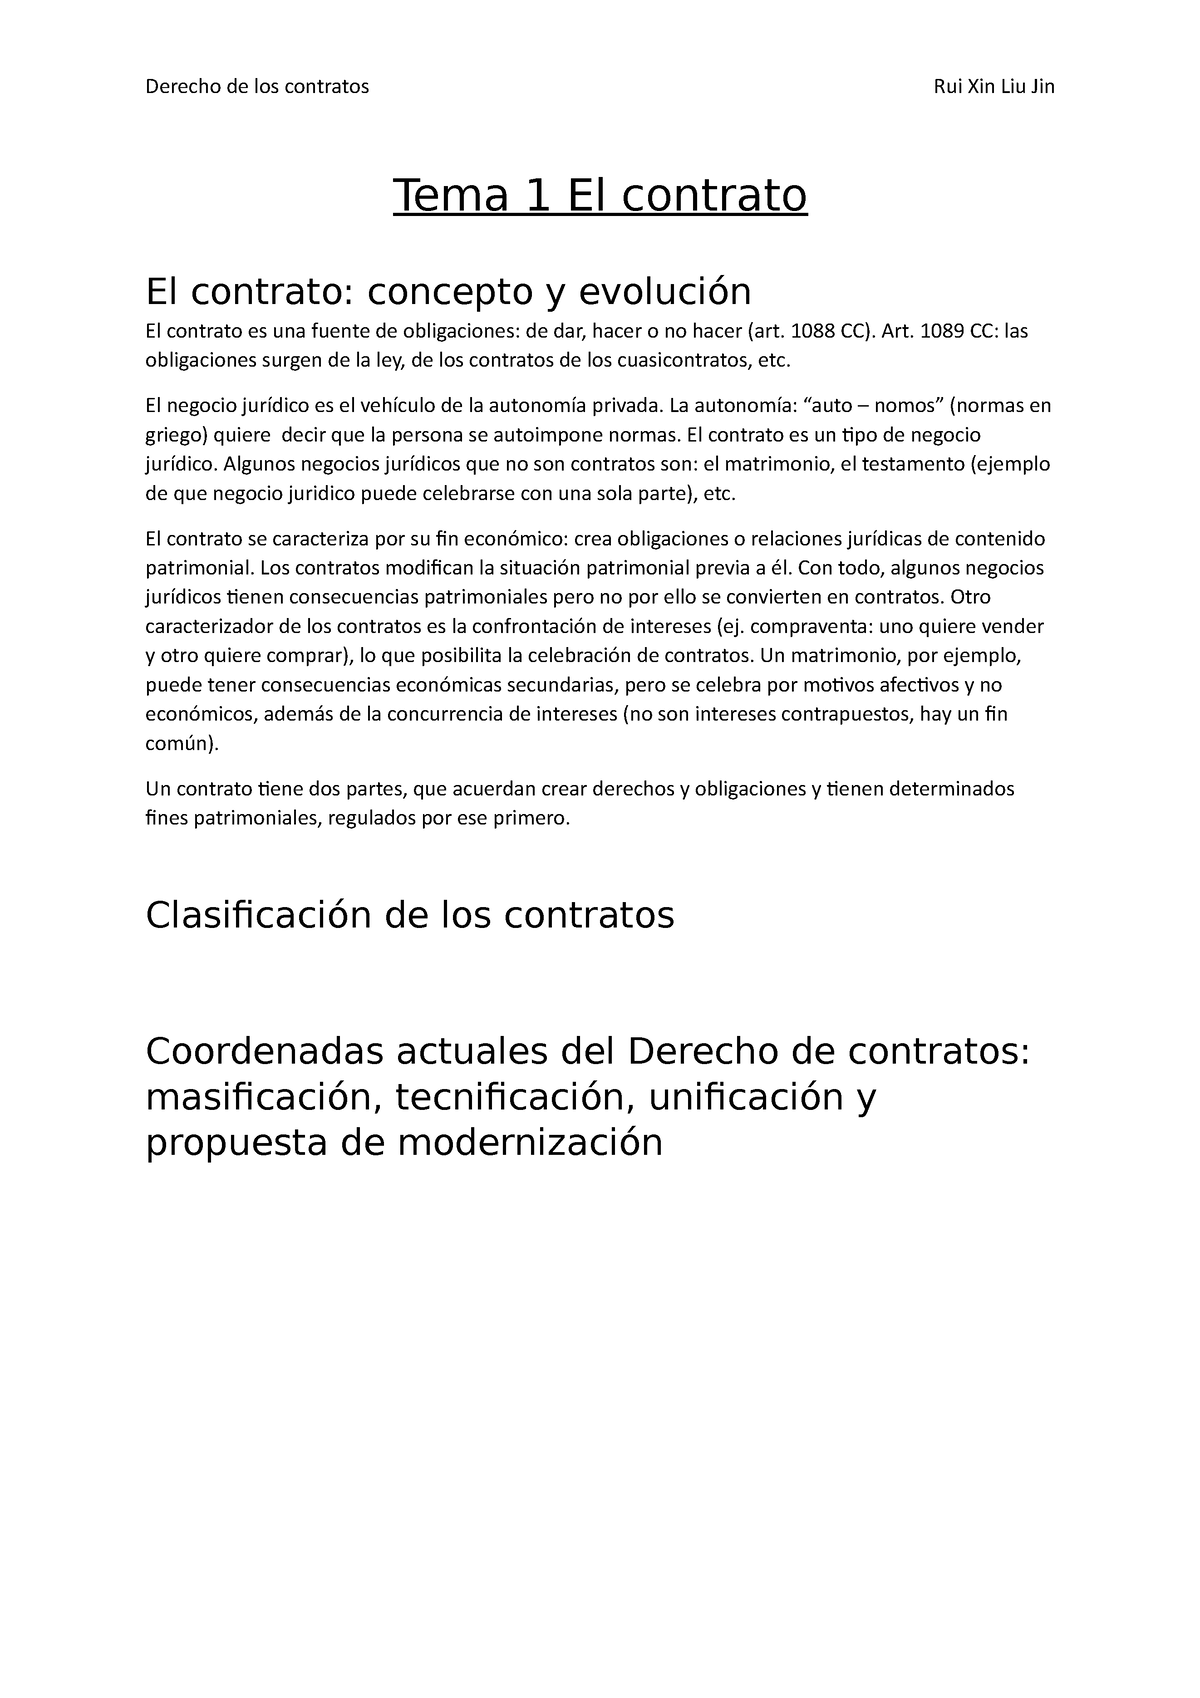 Tema 1 El Contrato Derecho De Los Contratos Rui Xin Liu Jin Tema 1 El Contrato El Contrato 0020